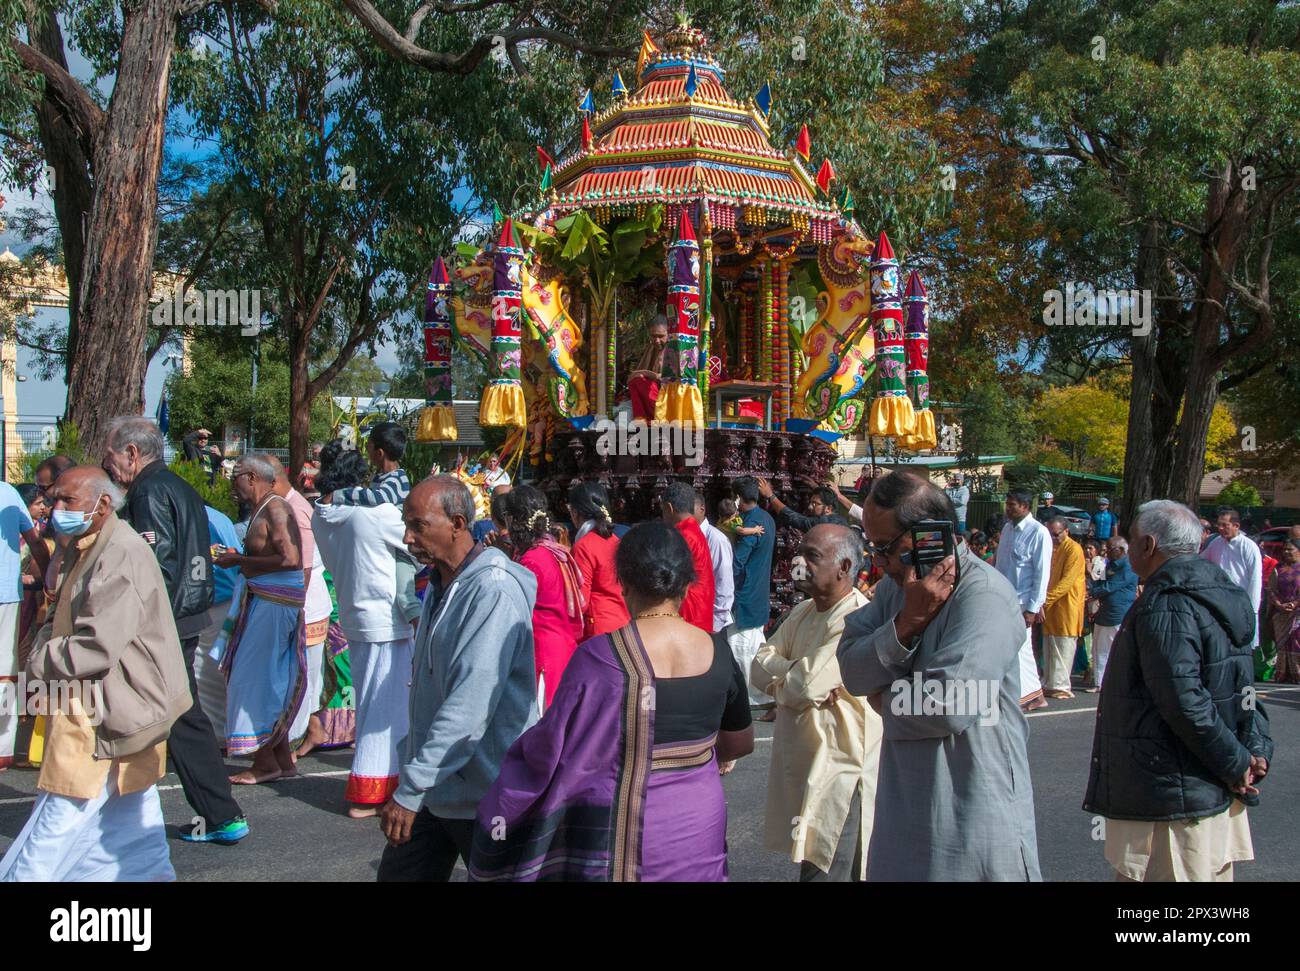 Der Streitwagen, in dem sich die Gottheit Ganesha befindet, wird beim Mahotsavam Chariot Festival 2023 in Melbourne, Australien, aus dem Tempel gezogen Stockfoto